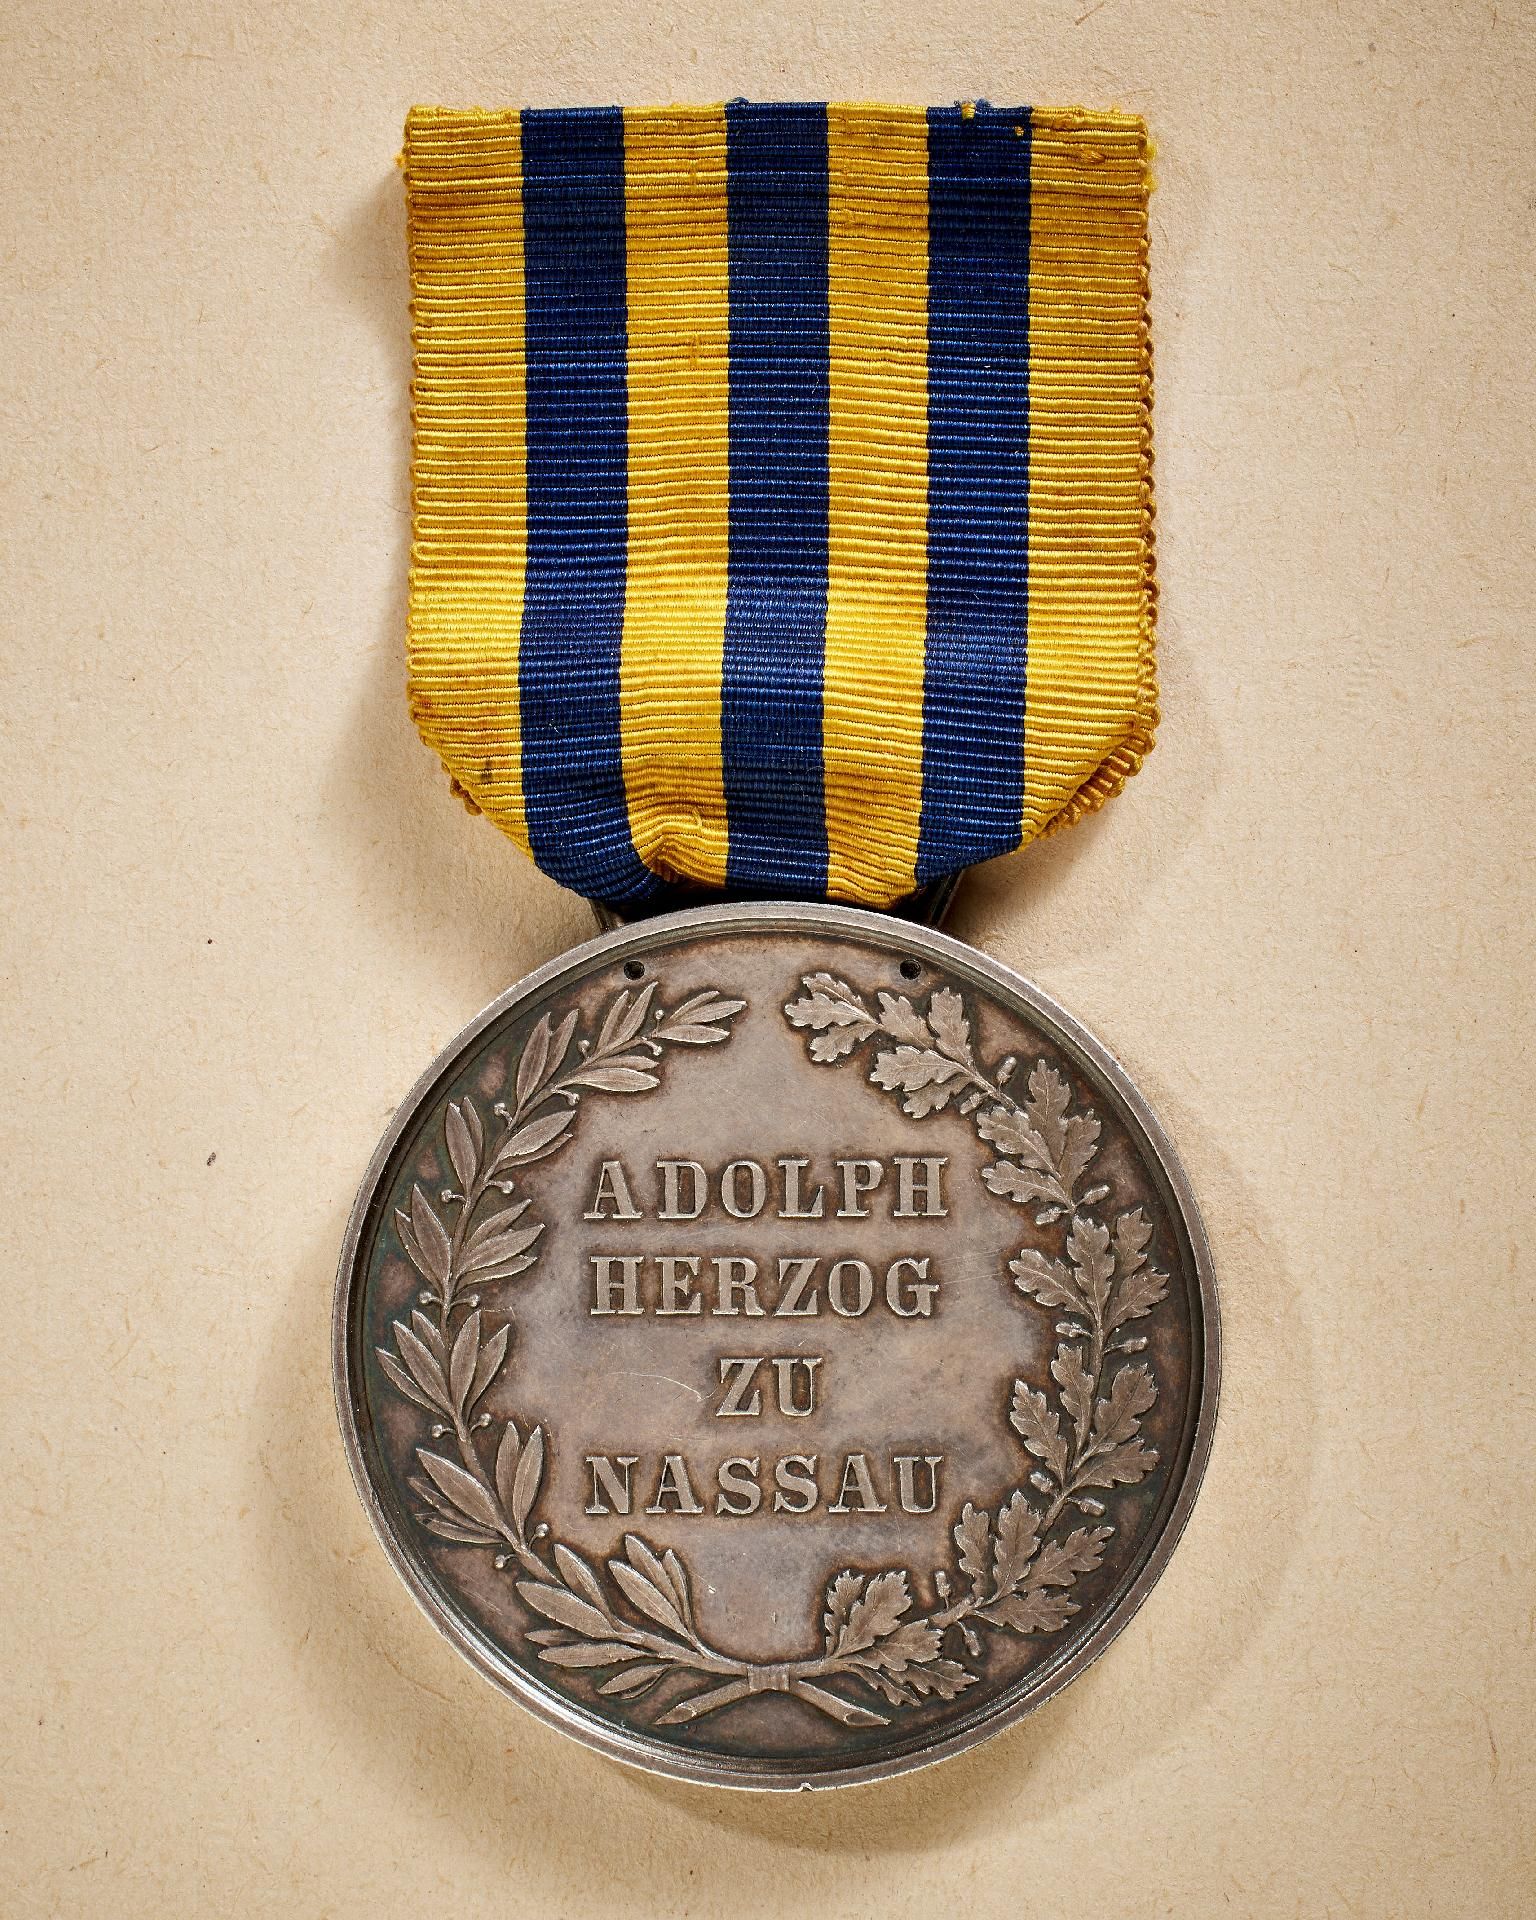 Herzogtum Nassau : Silberne Zivilverdienstmedaille mit dem älteren Kopf Herzog Adolphs (1865-1866). - Image 2 of 2